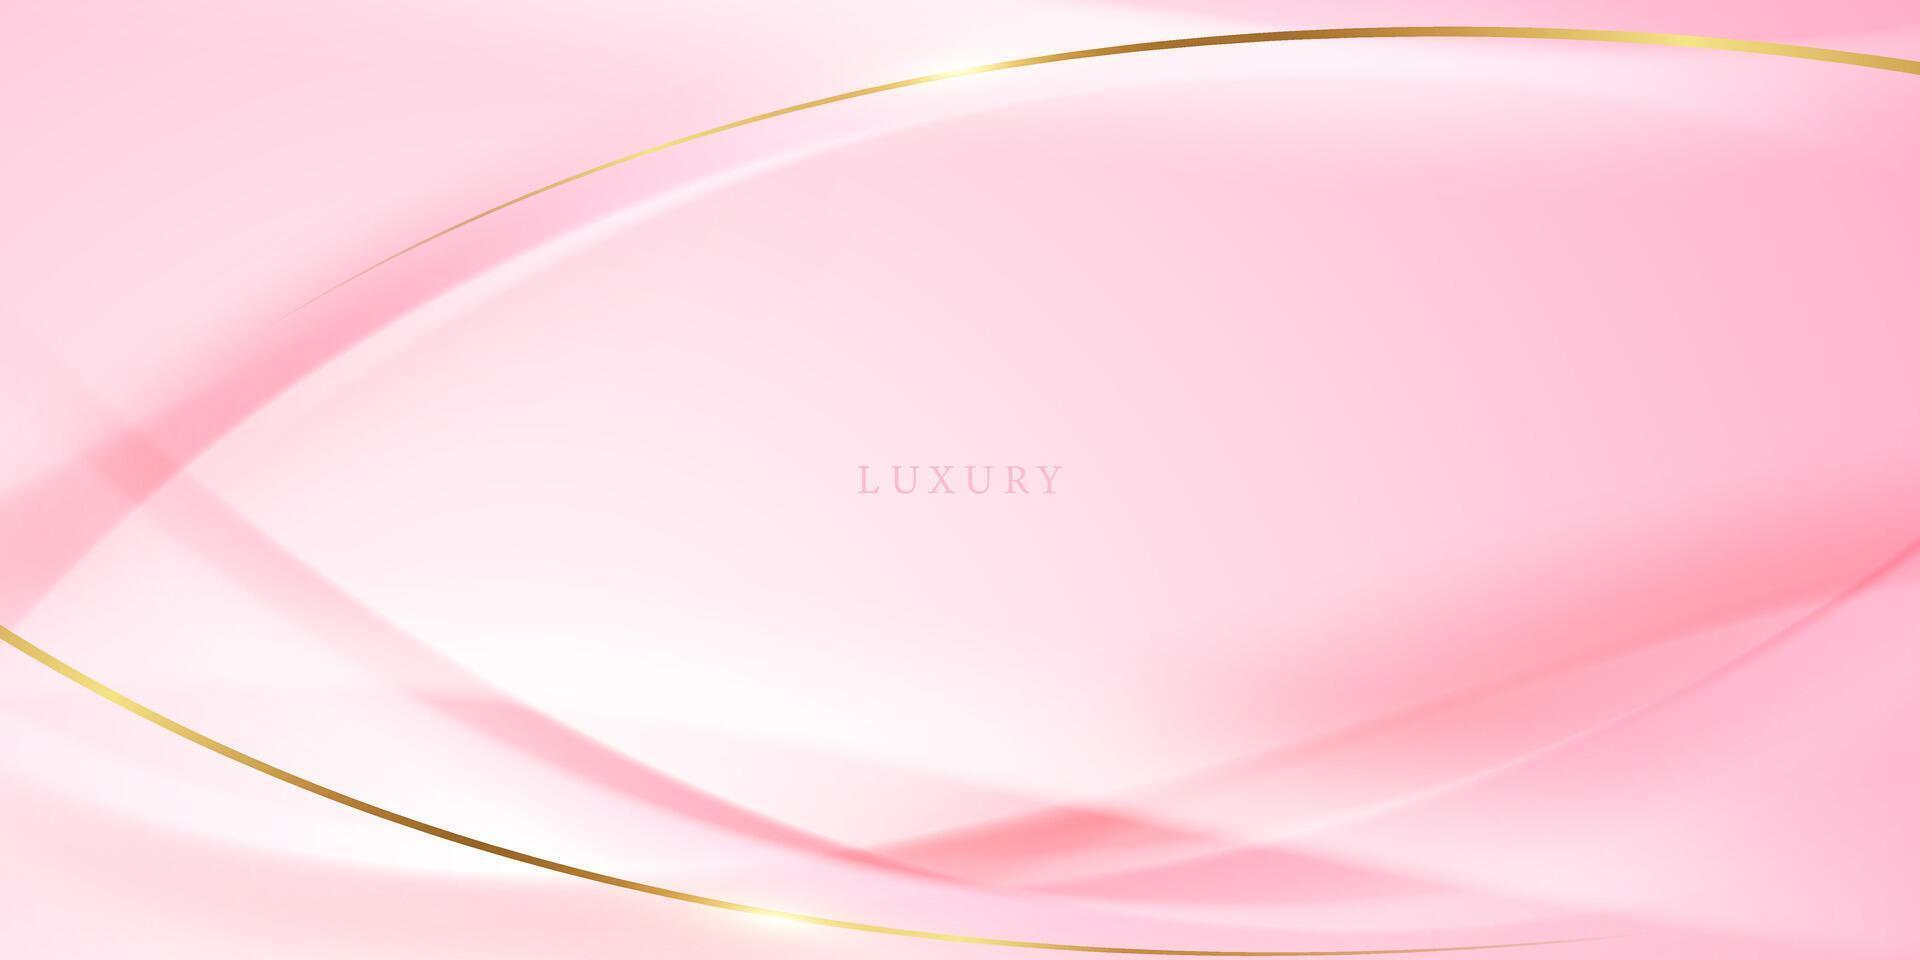 roze abstract achtergrond met luxe gouden elementen vector illustratie